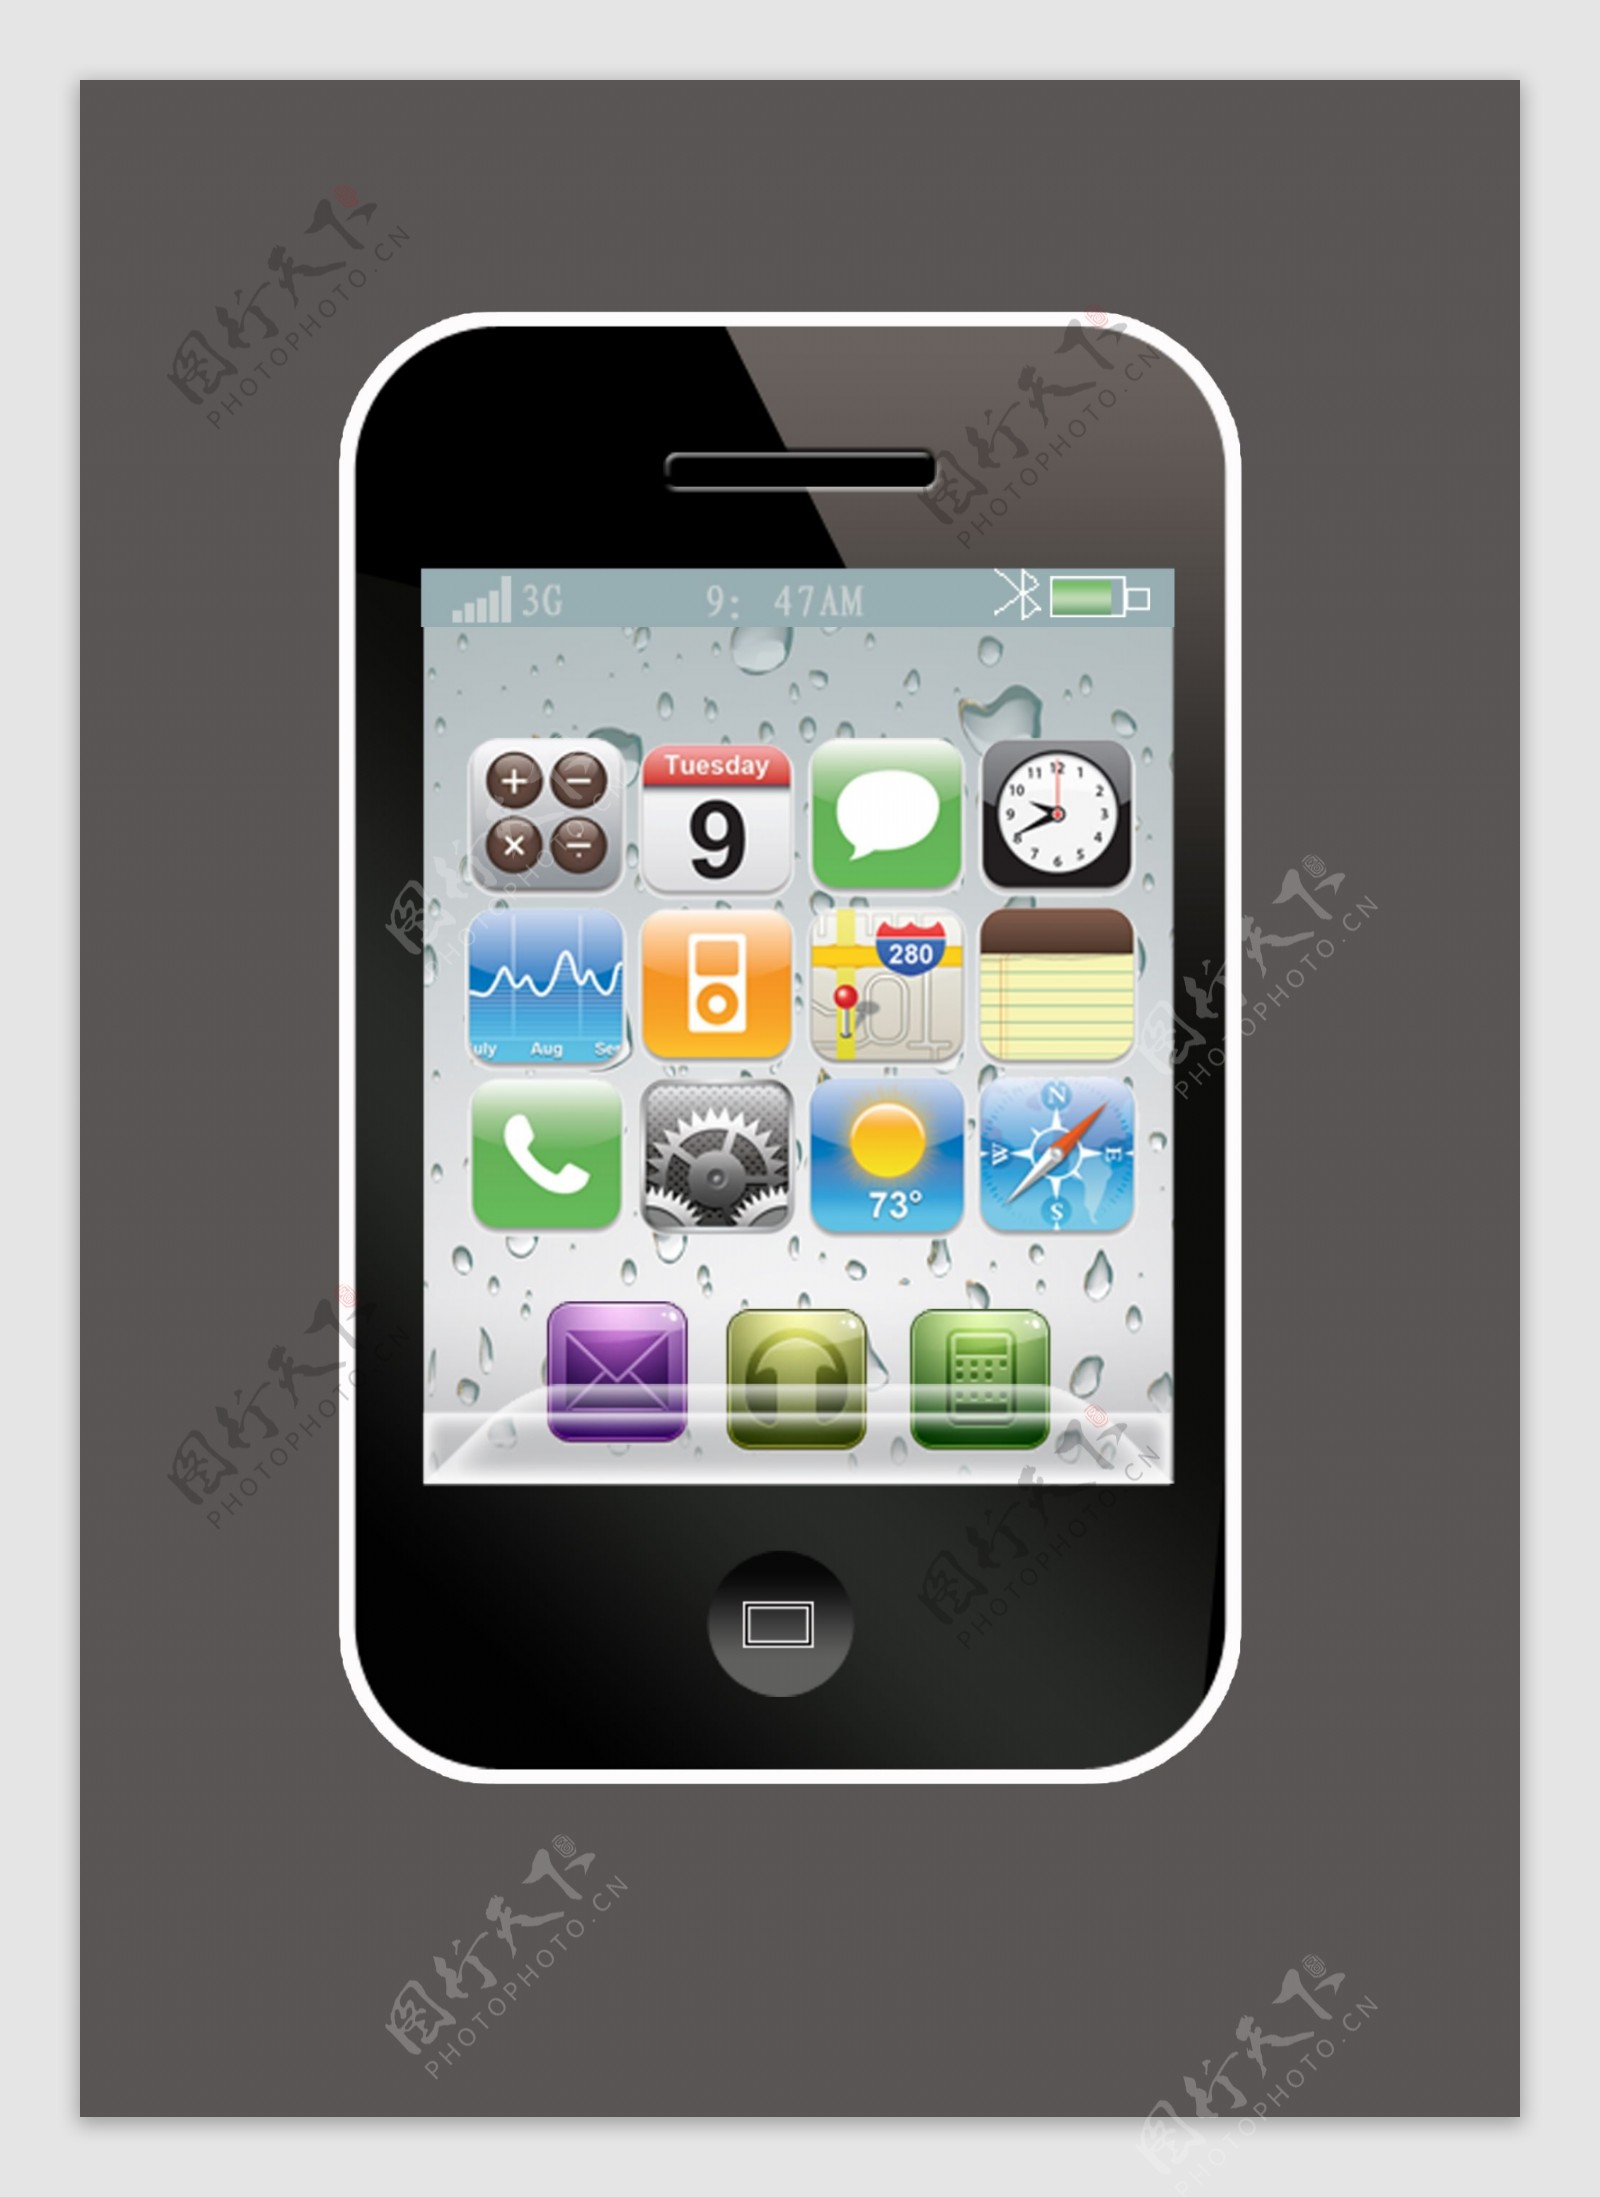 iphone4s手机图片